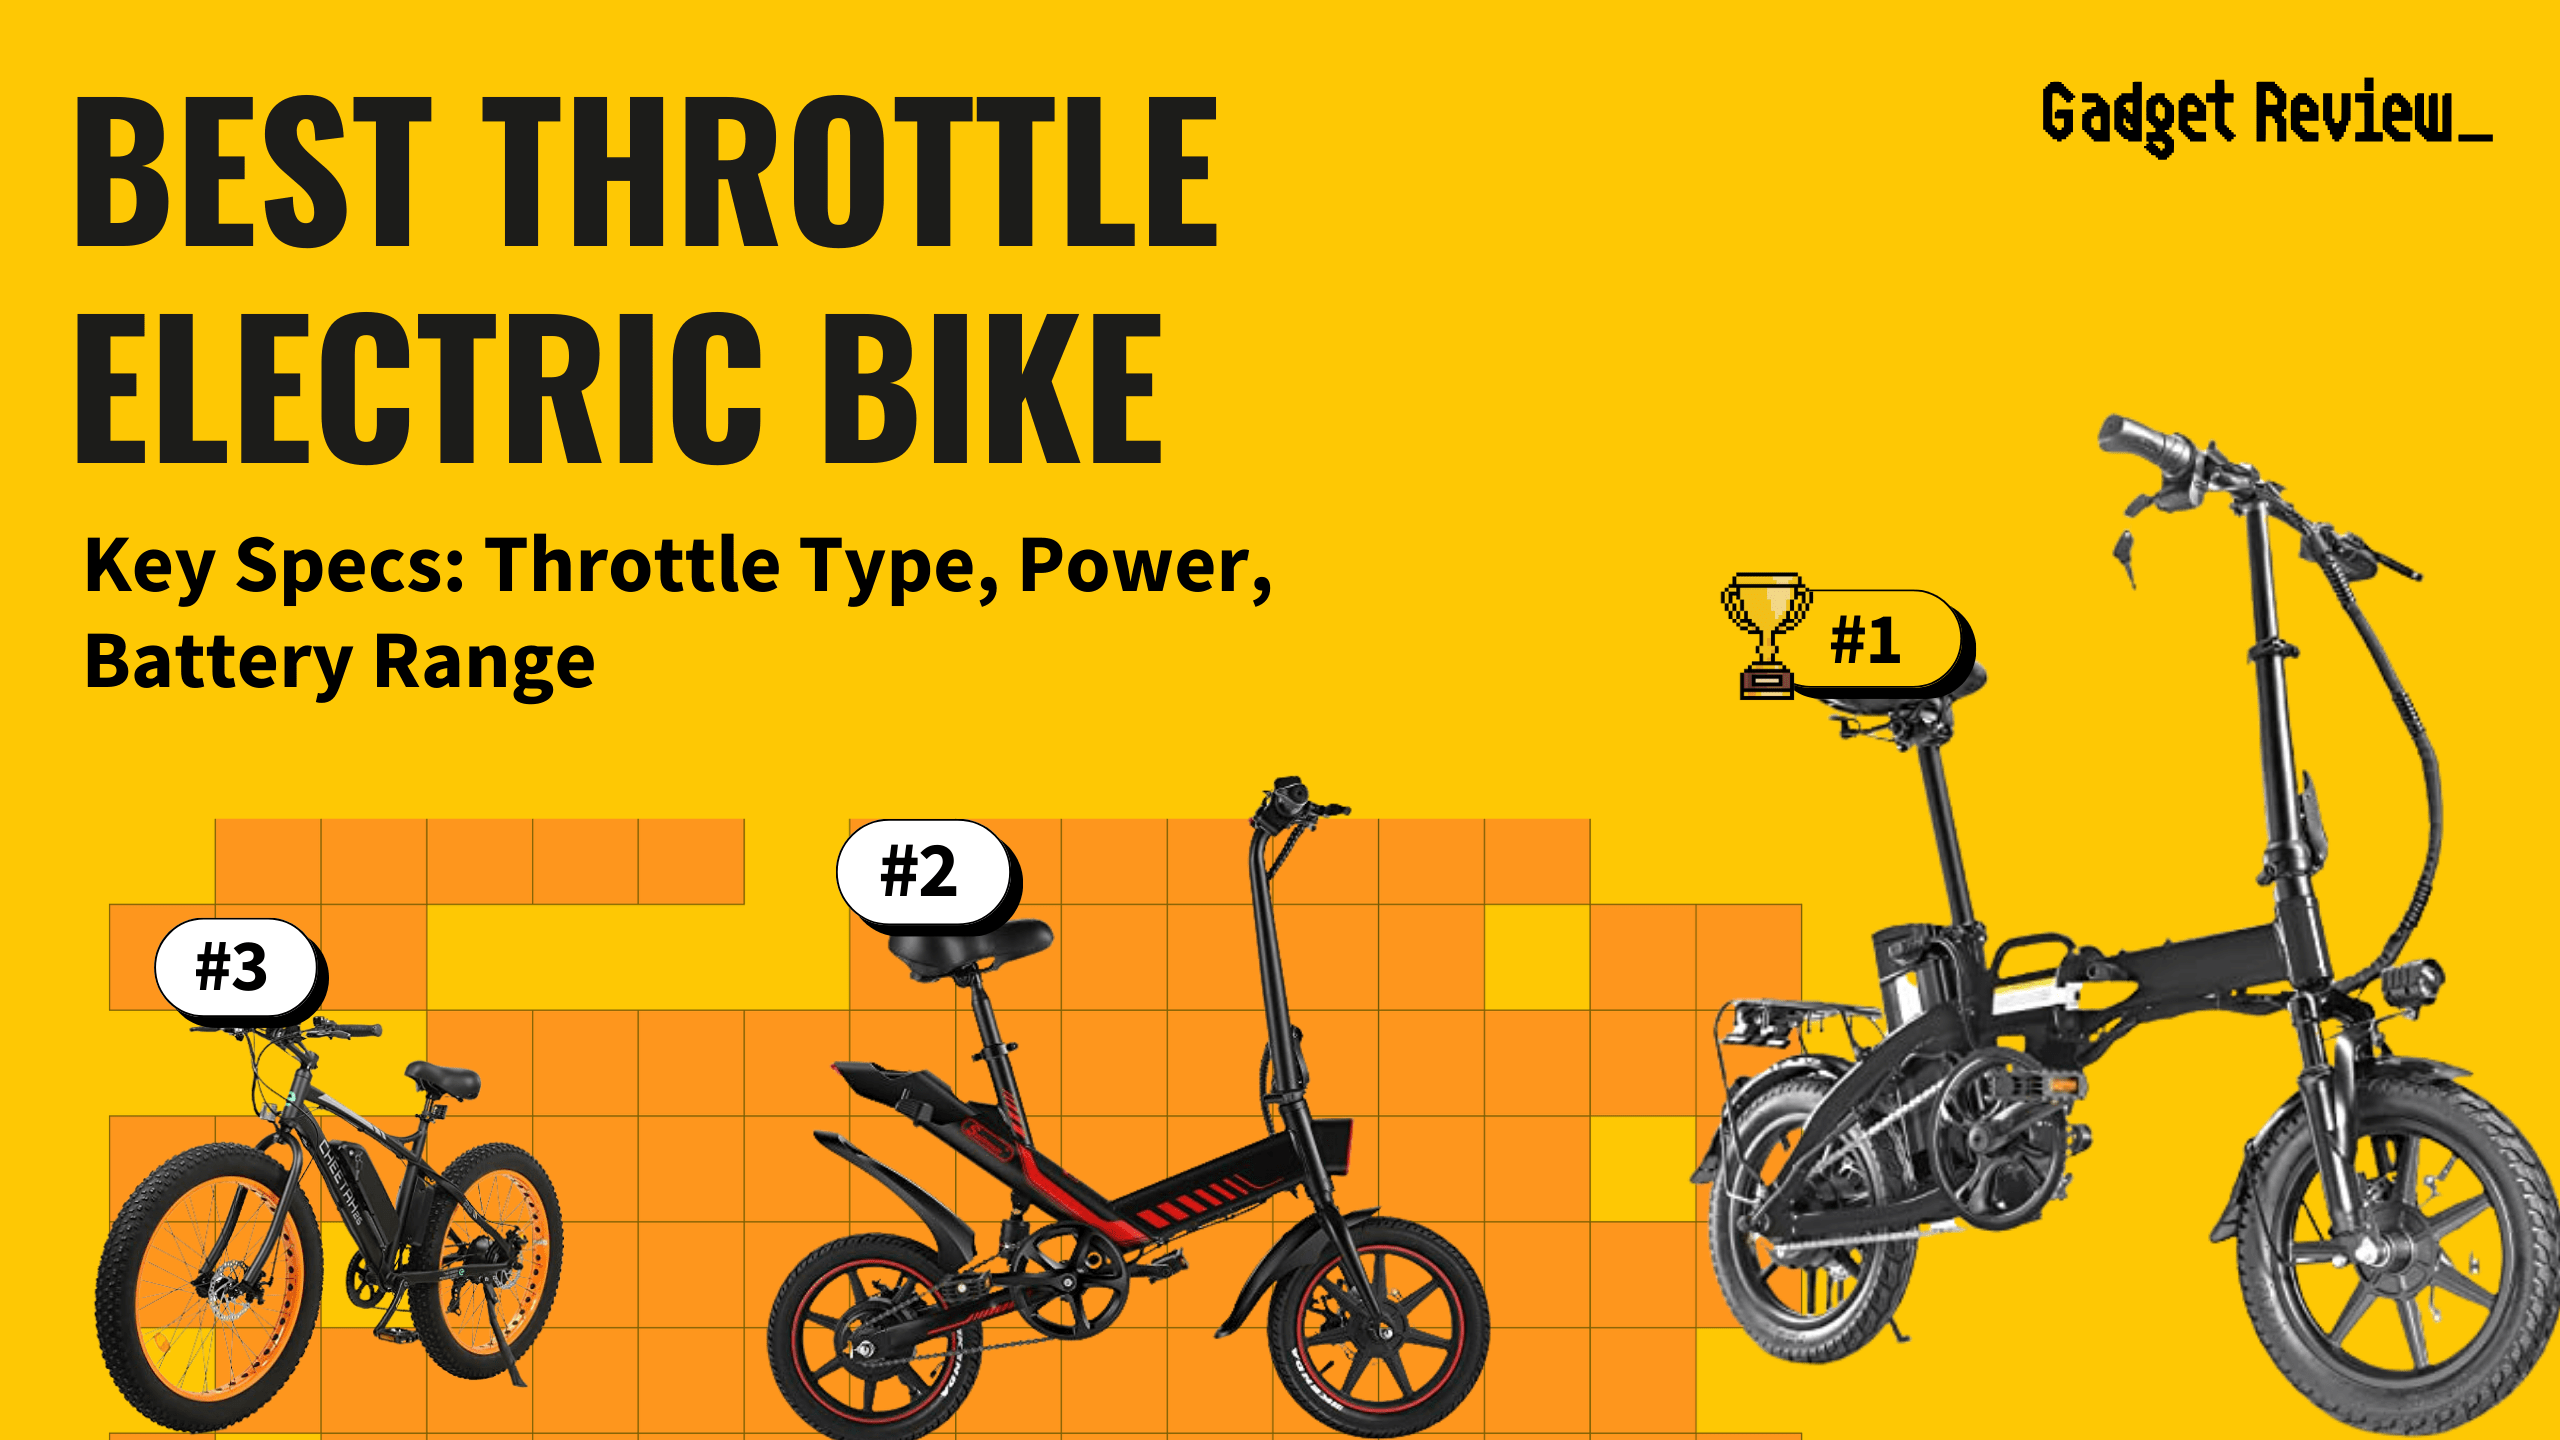 Best Throttle Electric Bike